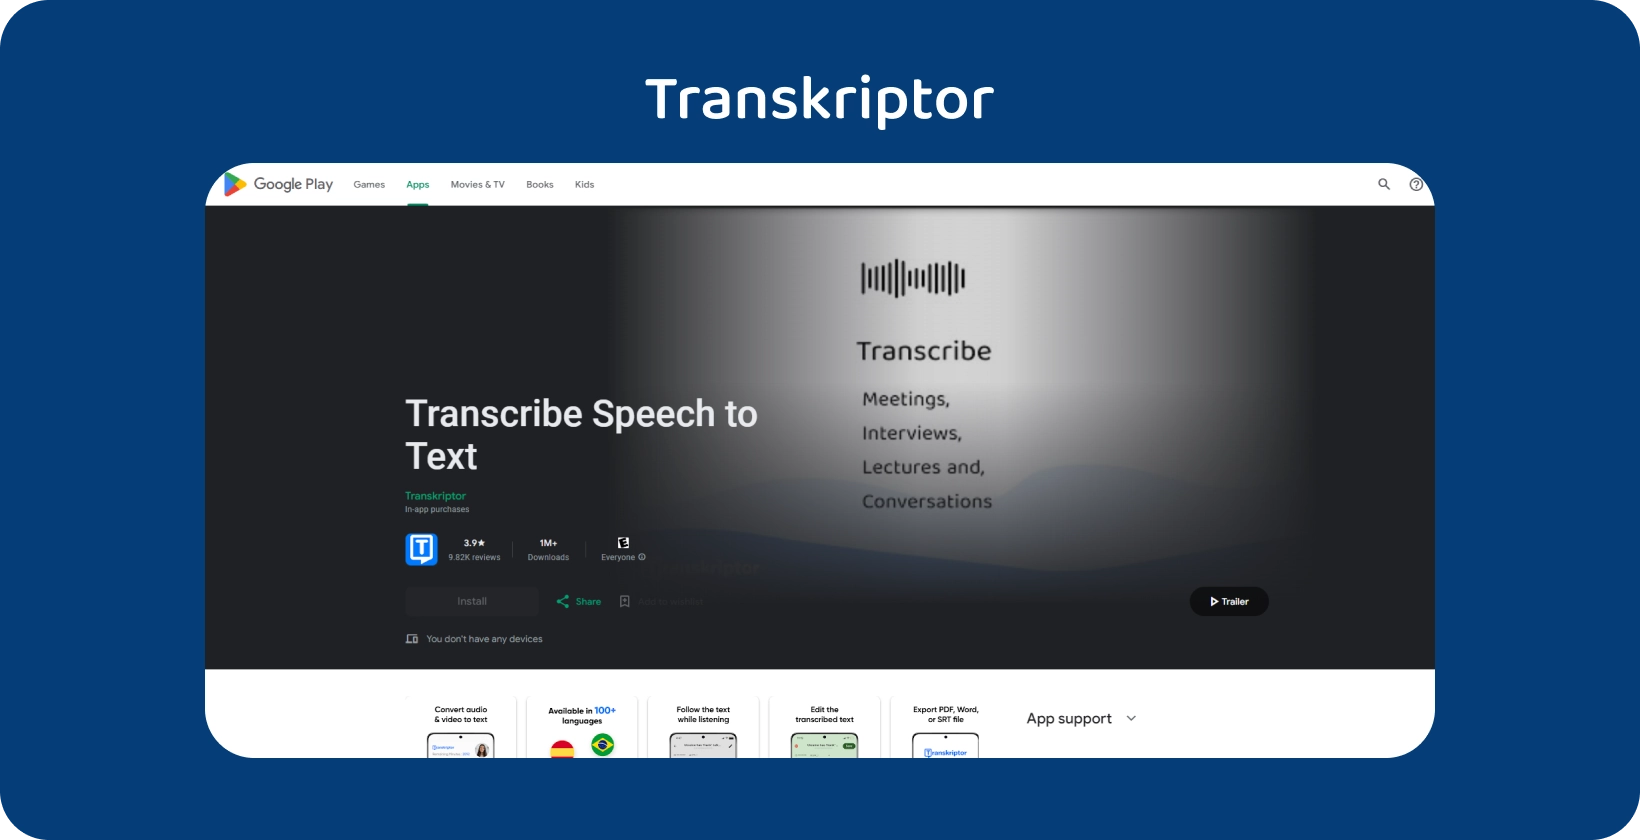 Transkriptor в Google Play, приложение для транскрибирования речи в текст, идеально подходящее для встреч и лекций.